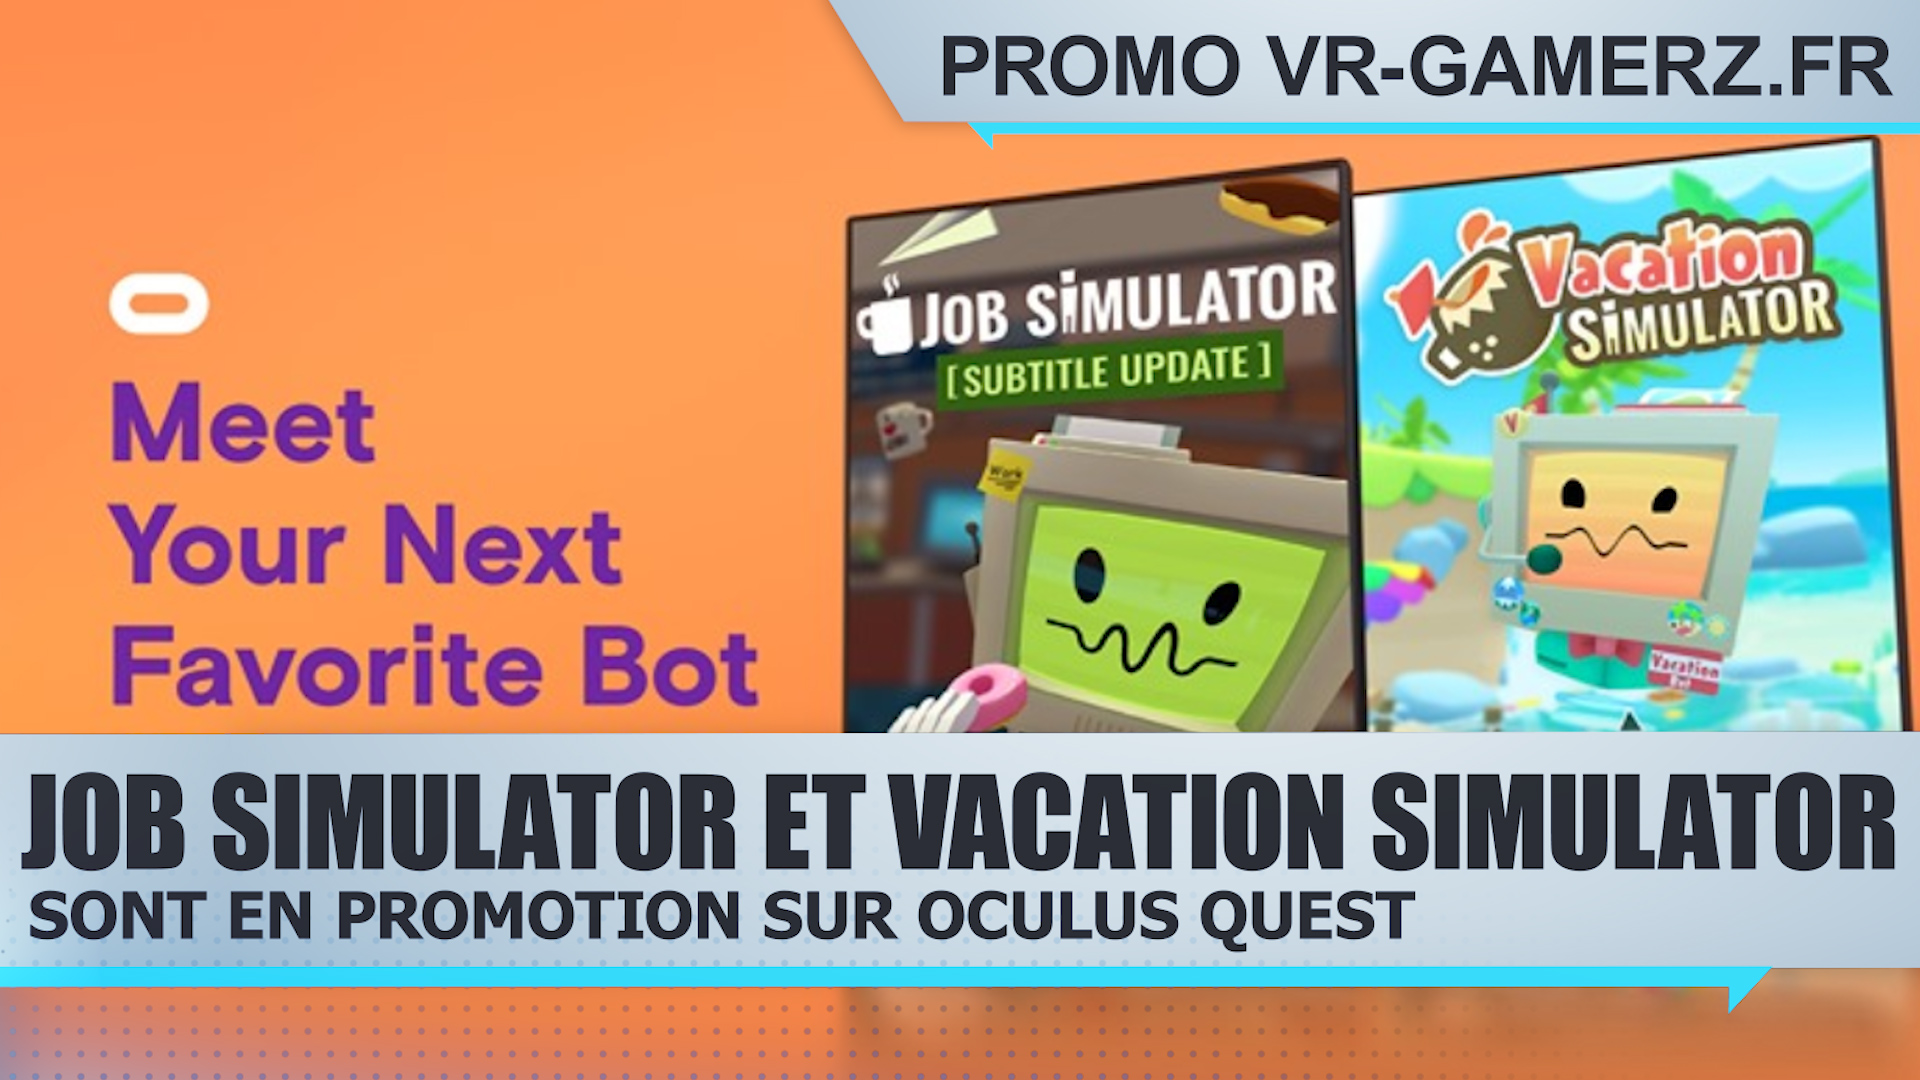 Job simulator et Vacation simulator sont en promotion sur Oculus quest !